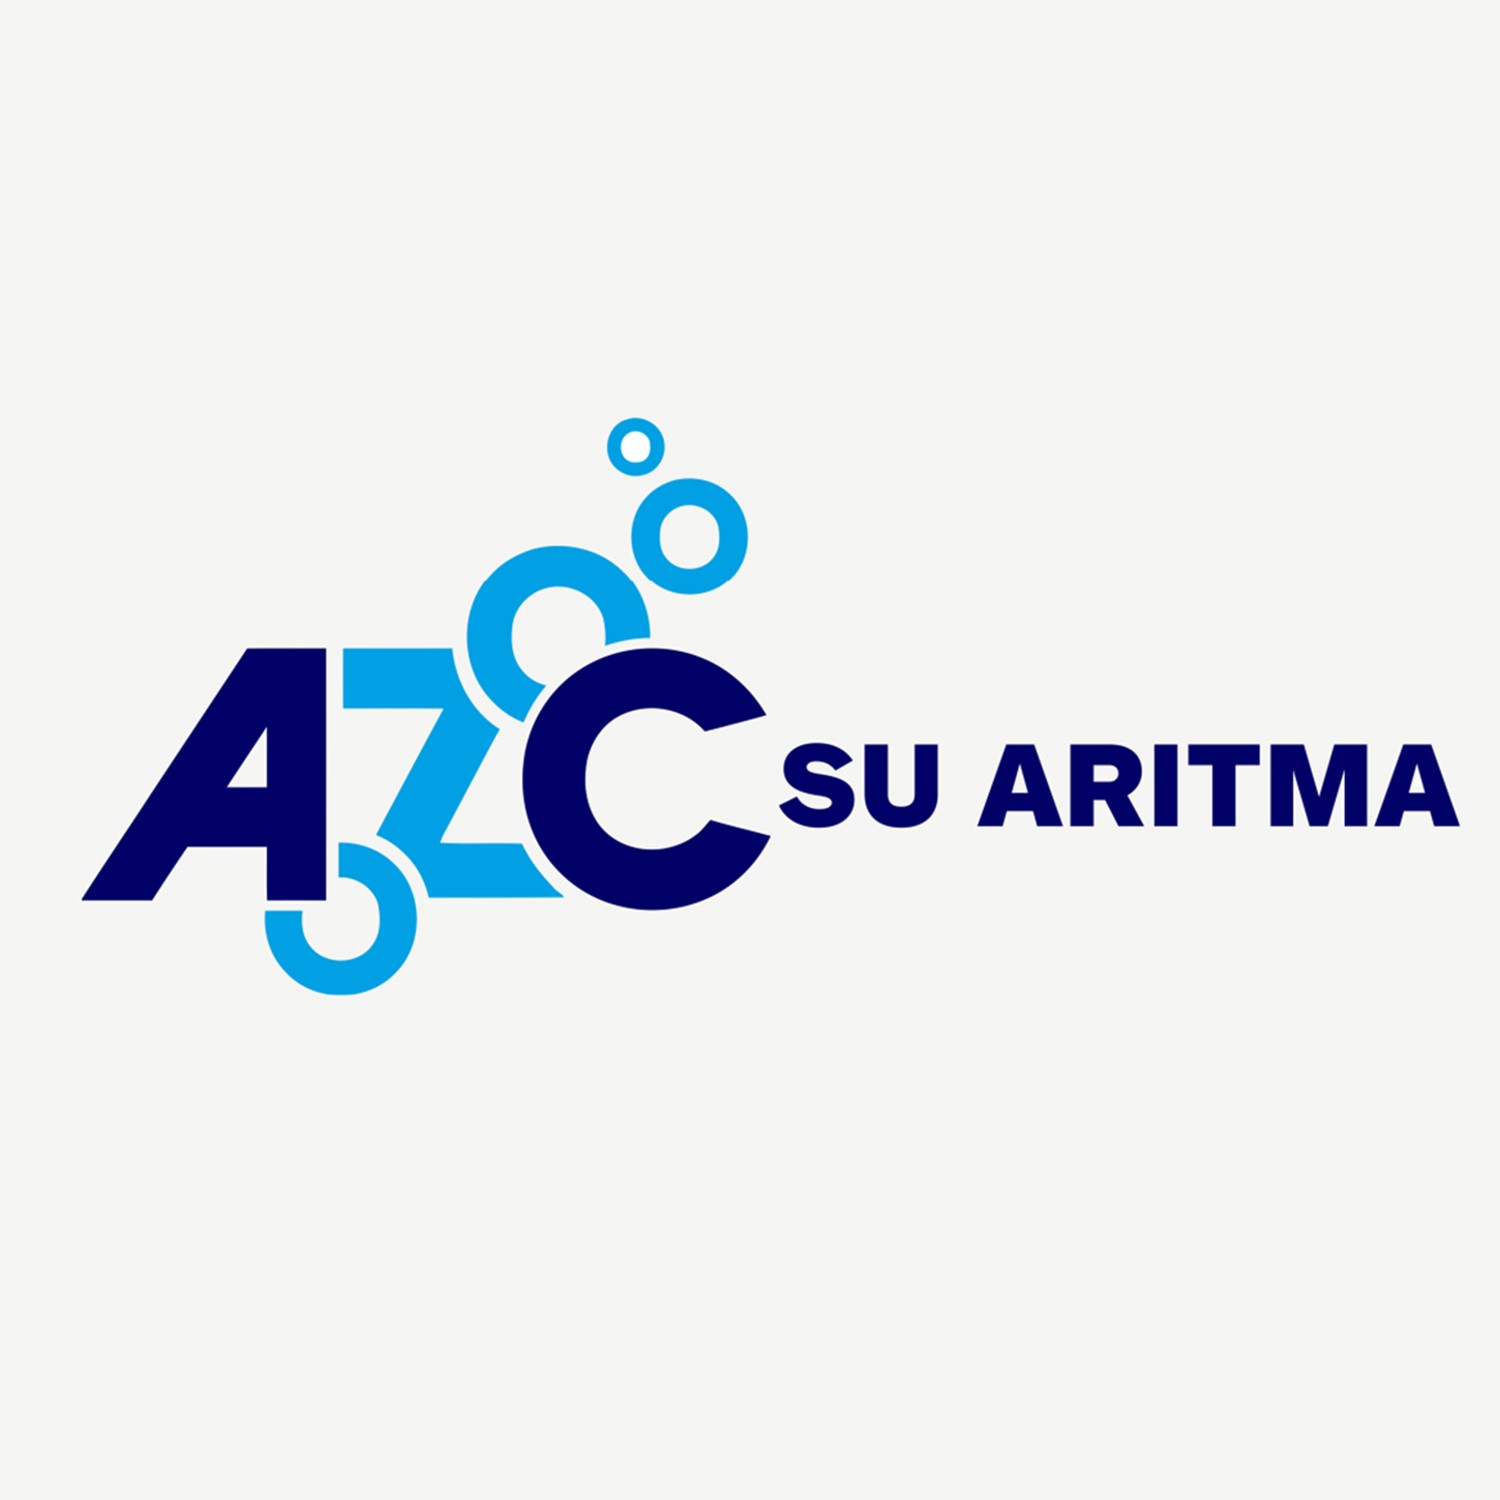 AZC su arıtma firmasına logo tasarımı çalışmamız.